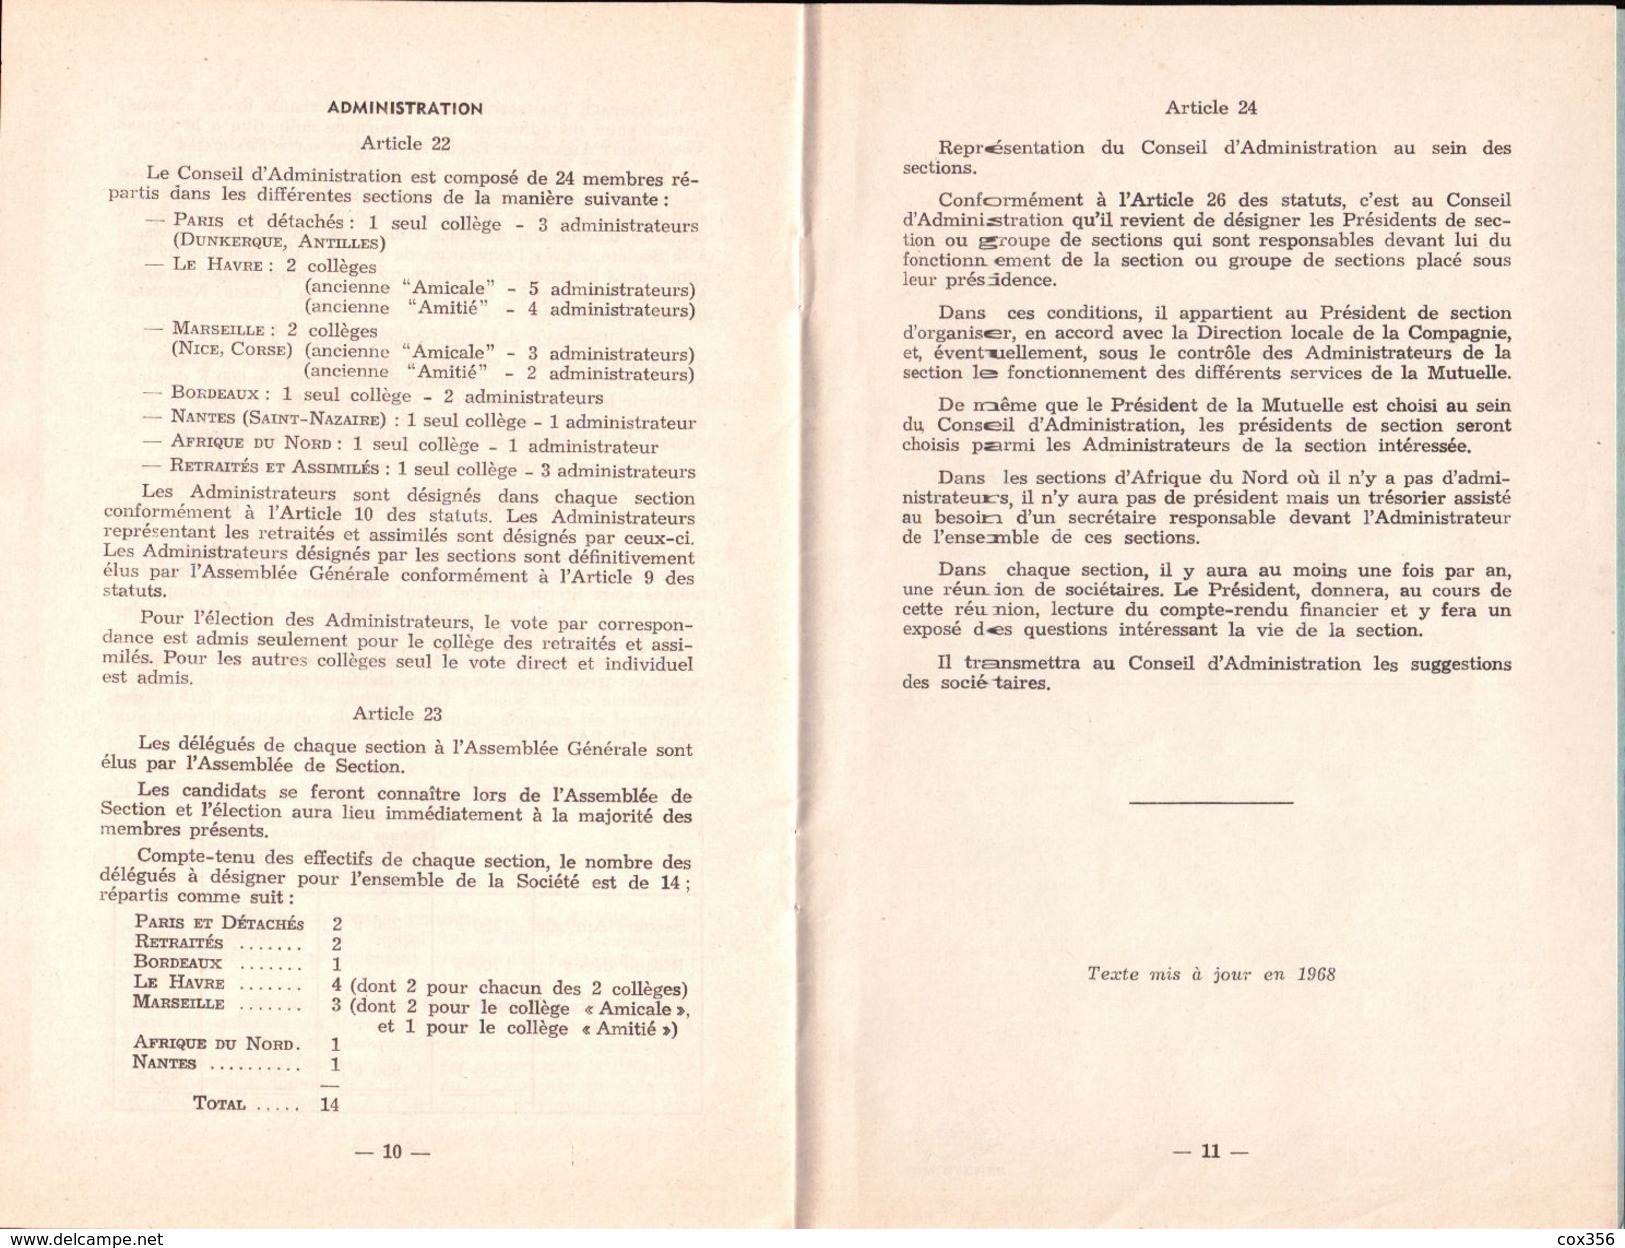 RÈGLEMENT INTÉRIEUR De L'Amicale TRANSATLANTIQUE 1969 - Tecnología & Instrumentos